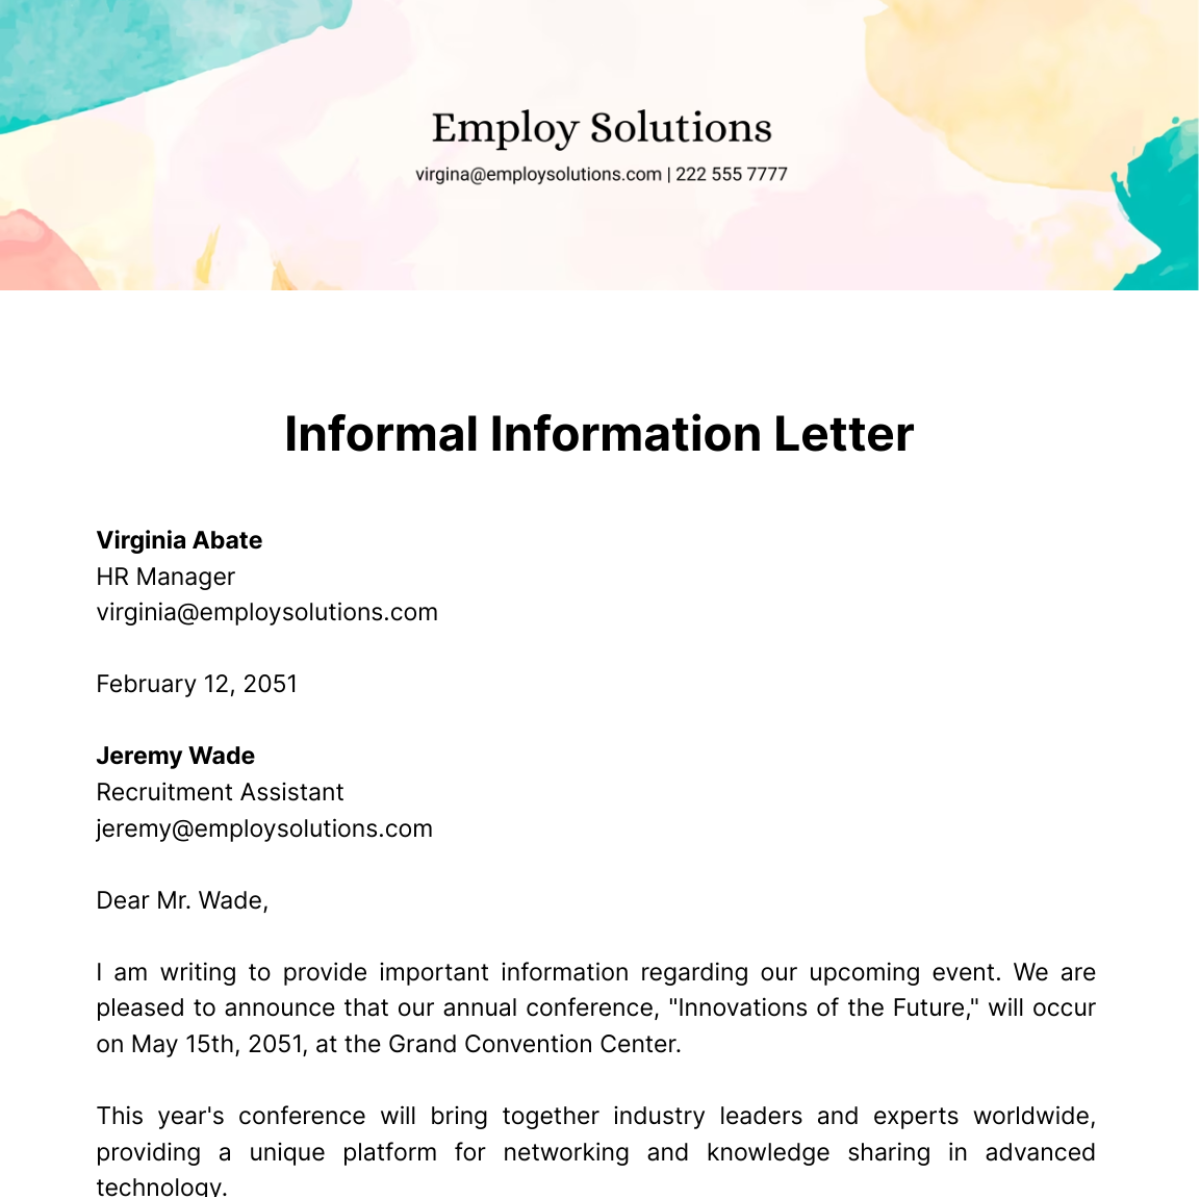 Informal Information Letter Template